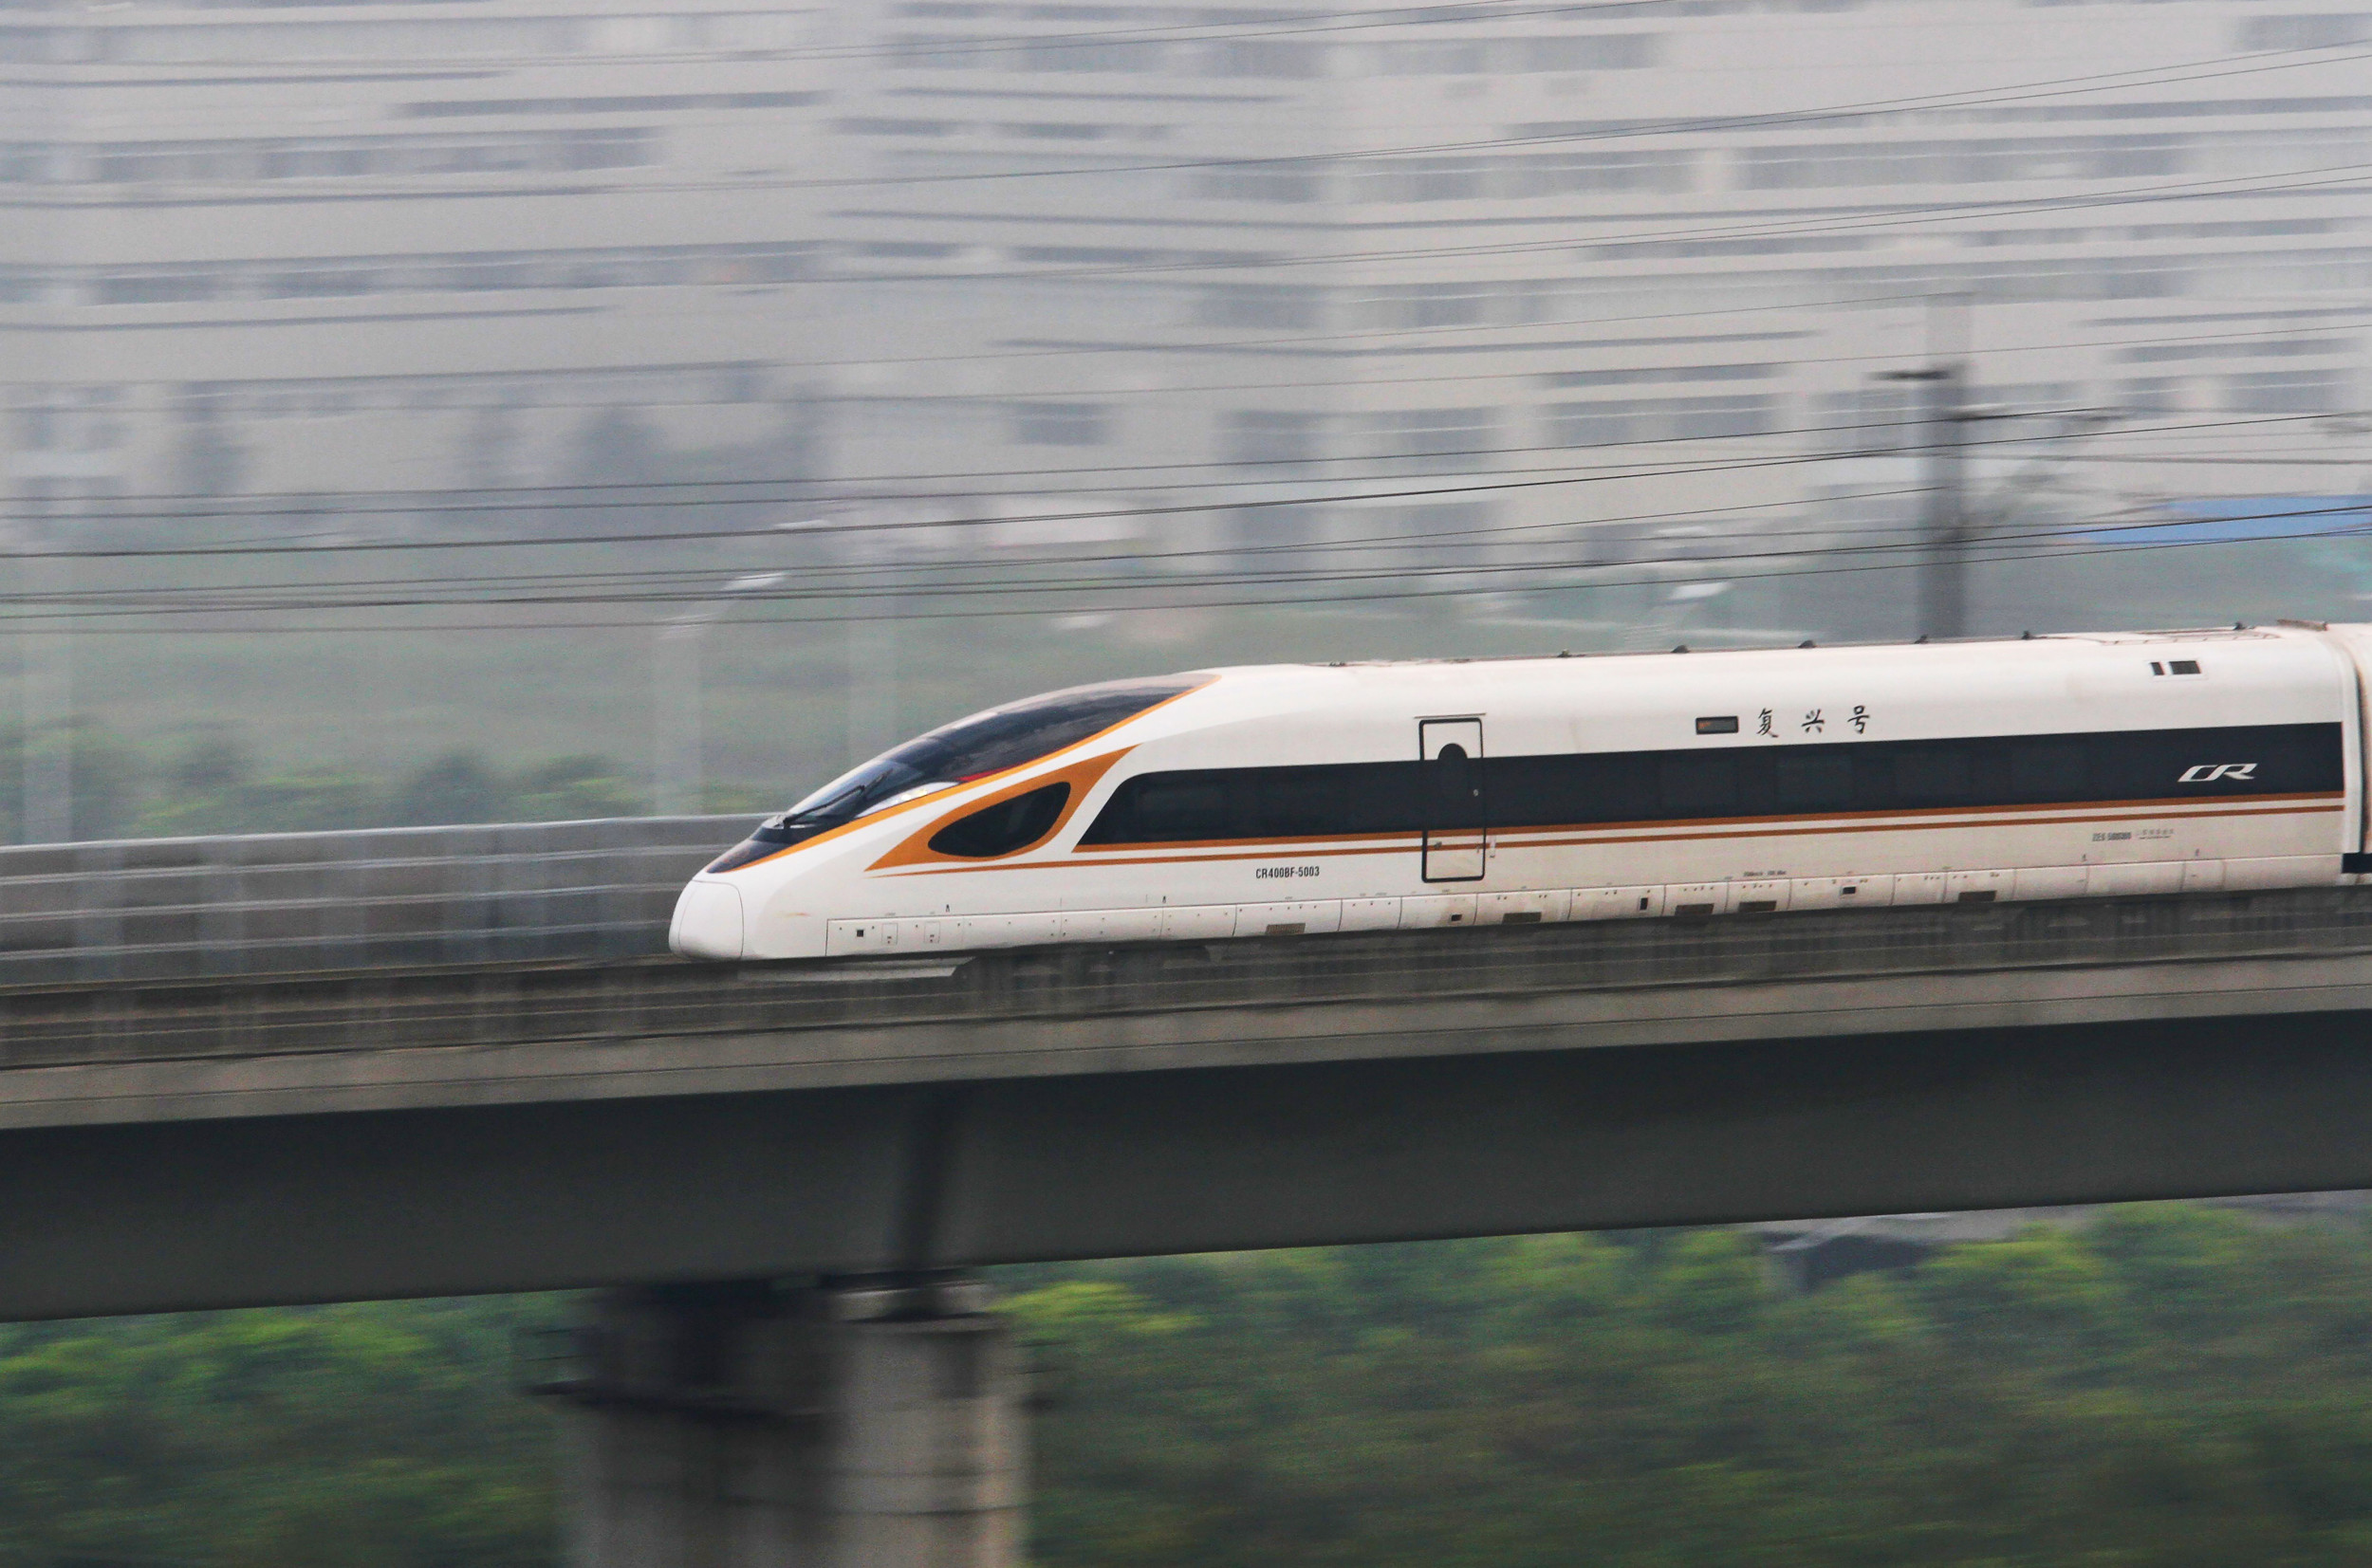 Comment le plan ferroviaire à grande vitesse américain se compare-t-il à celui de la Chine